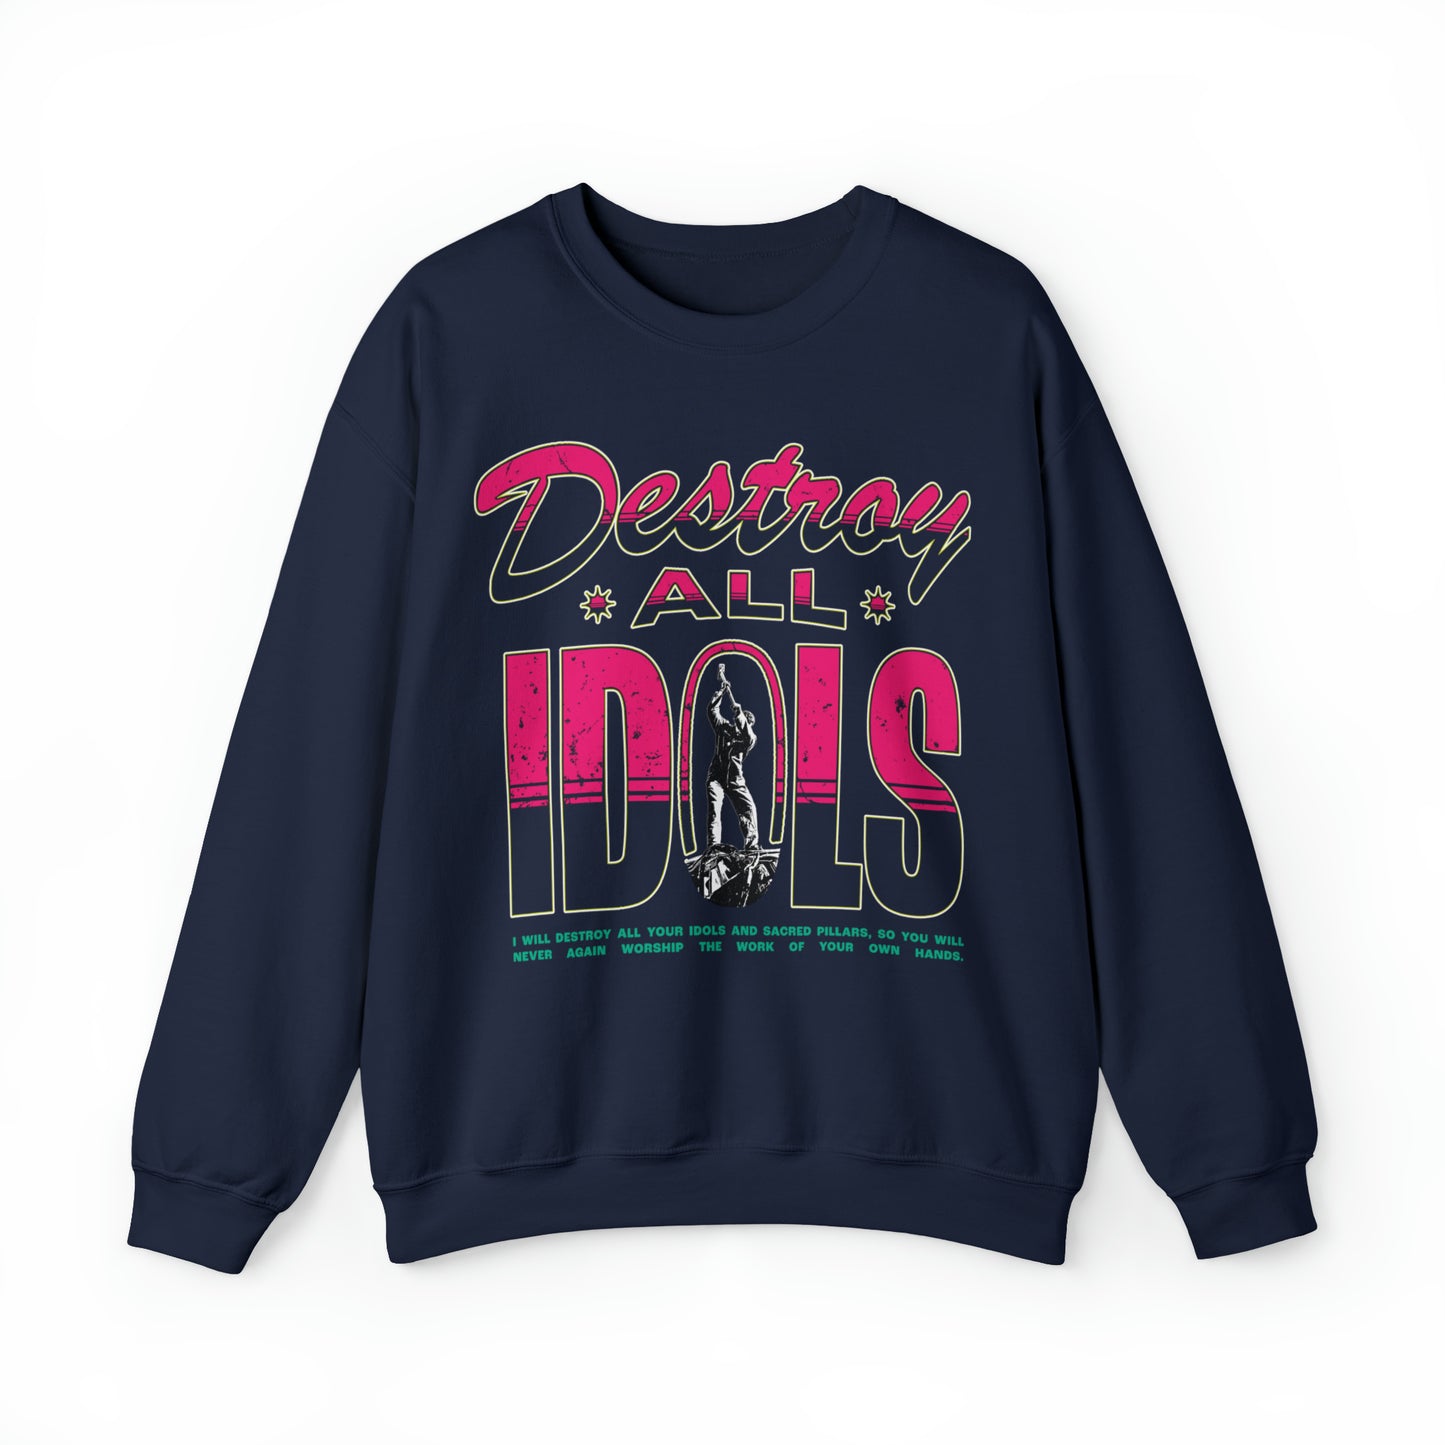 Destroy All Idols Sweatshirt